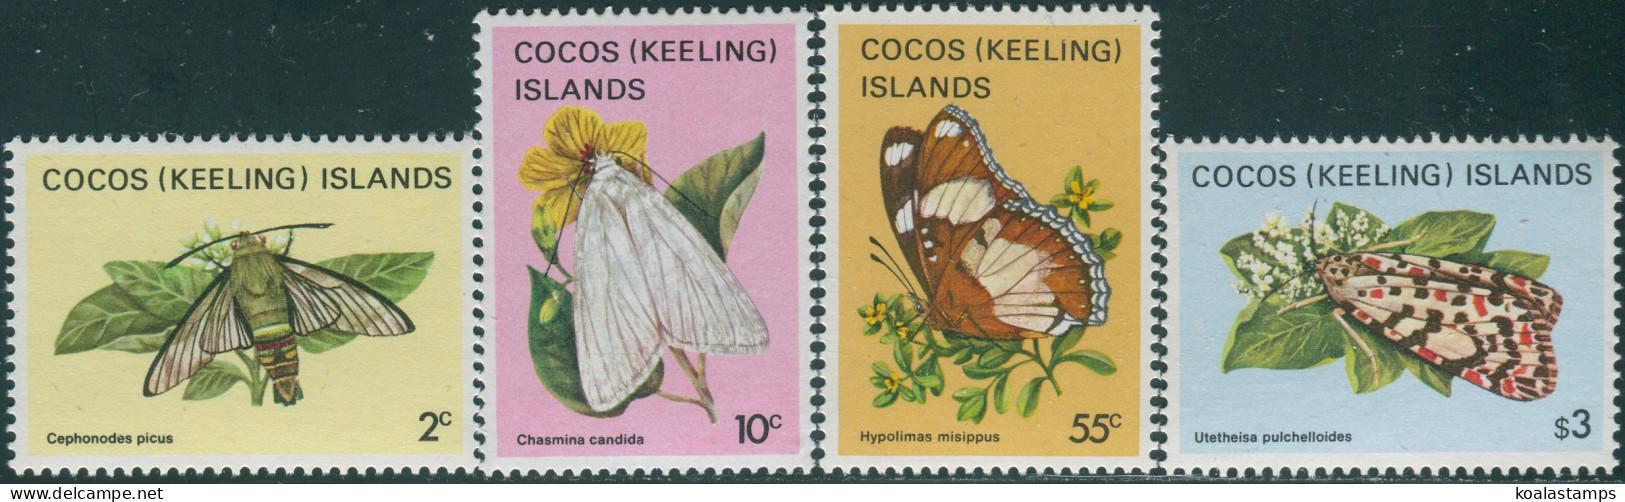 Cocos Islands 1982 SG85-99 Butterflies MNH - Cocoseilanden